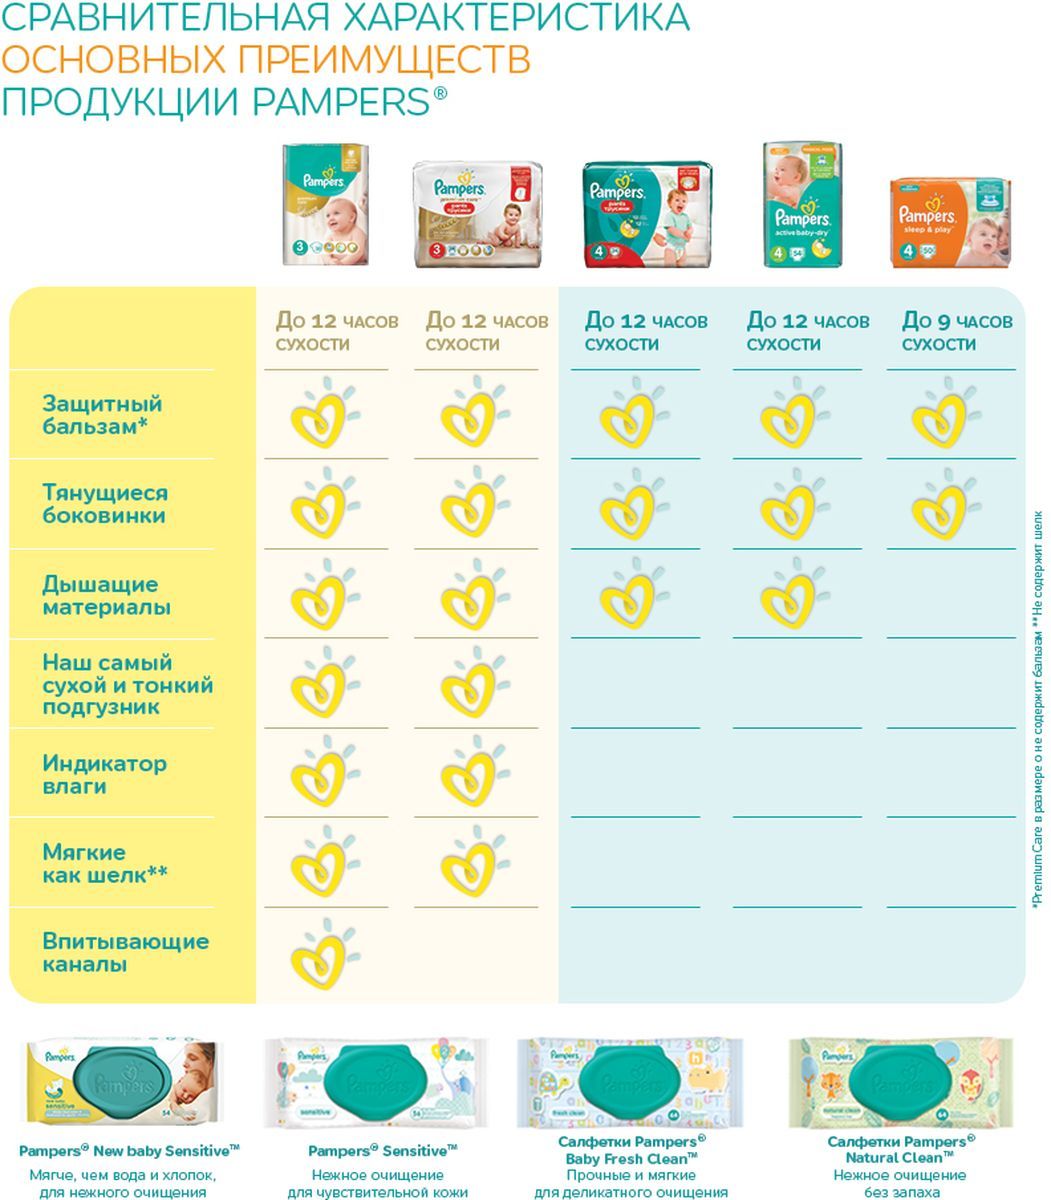 Pampers Premium Care  5 (11-18 ) 44 